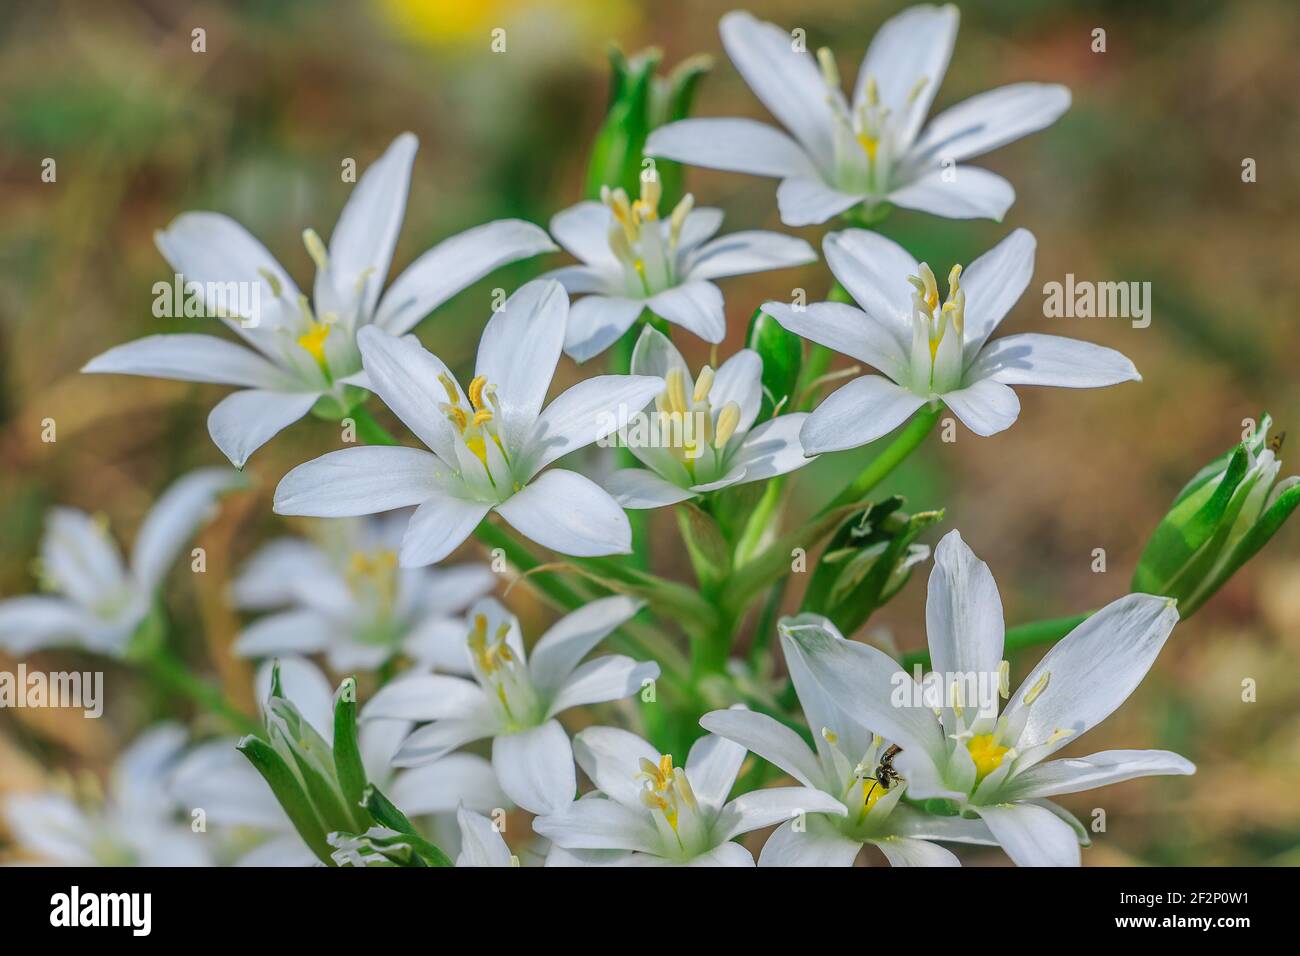 fiori bianchi dalla stella lattiginosa umbel. Pianta stella di Betlemme in un prato. Fiore in primavera con petali bianchi e polline con pistil. Genere di latte Foto Stock